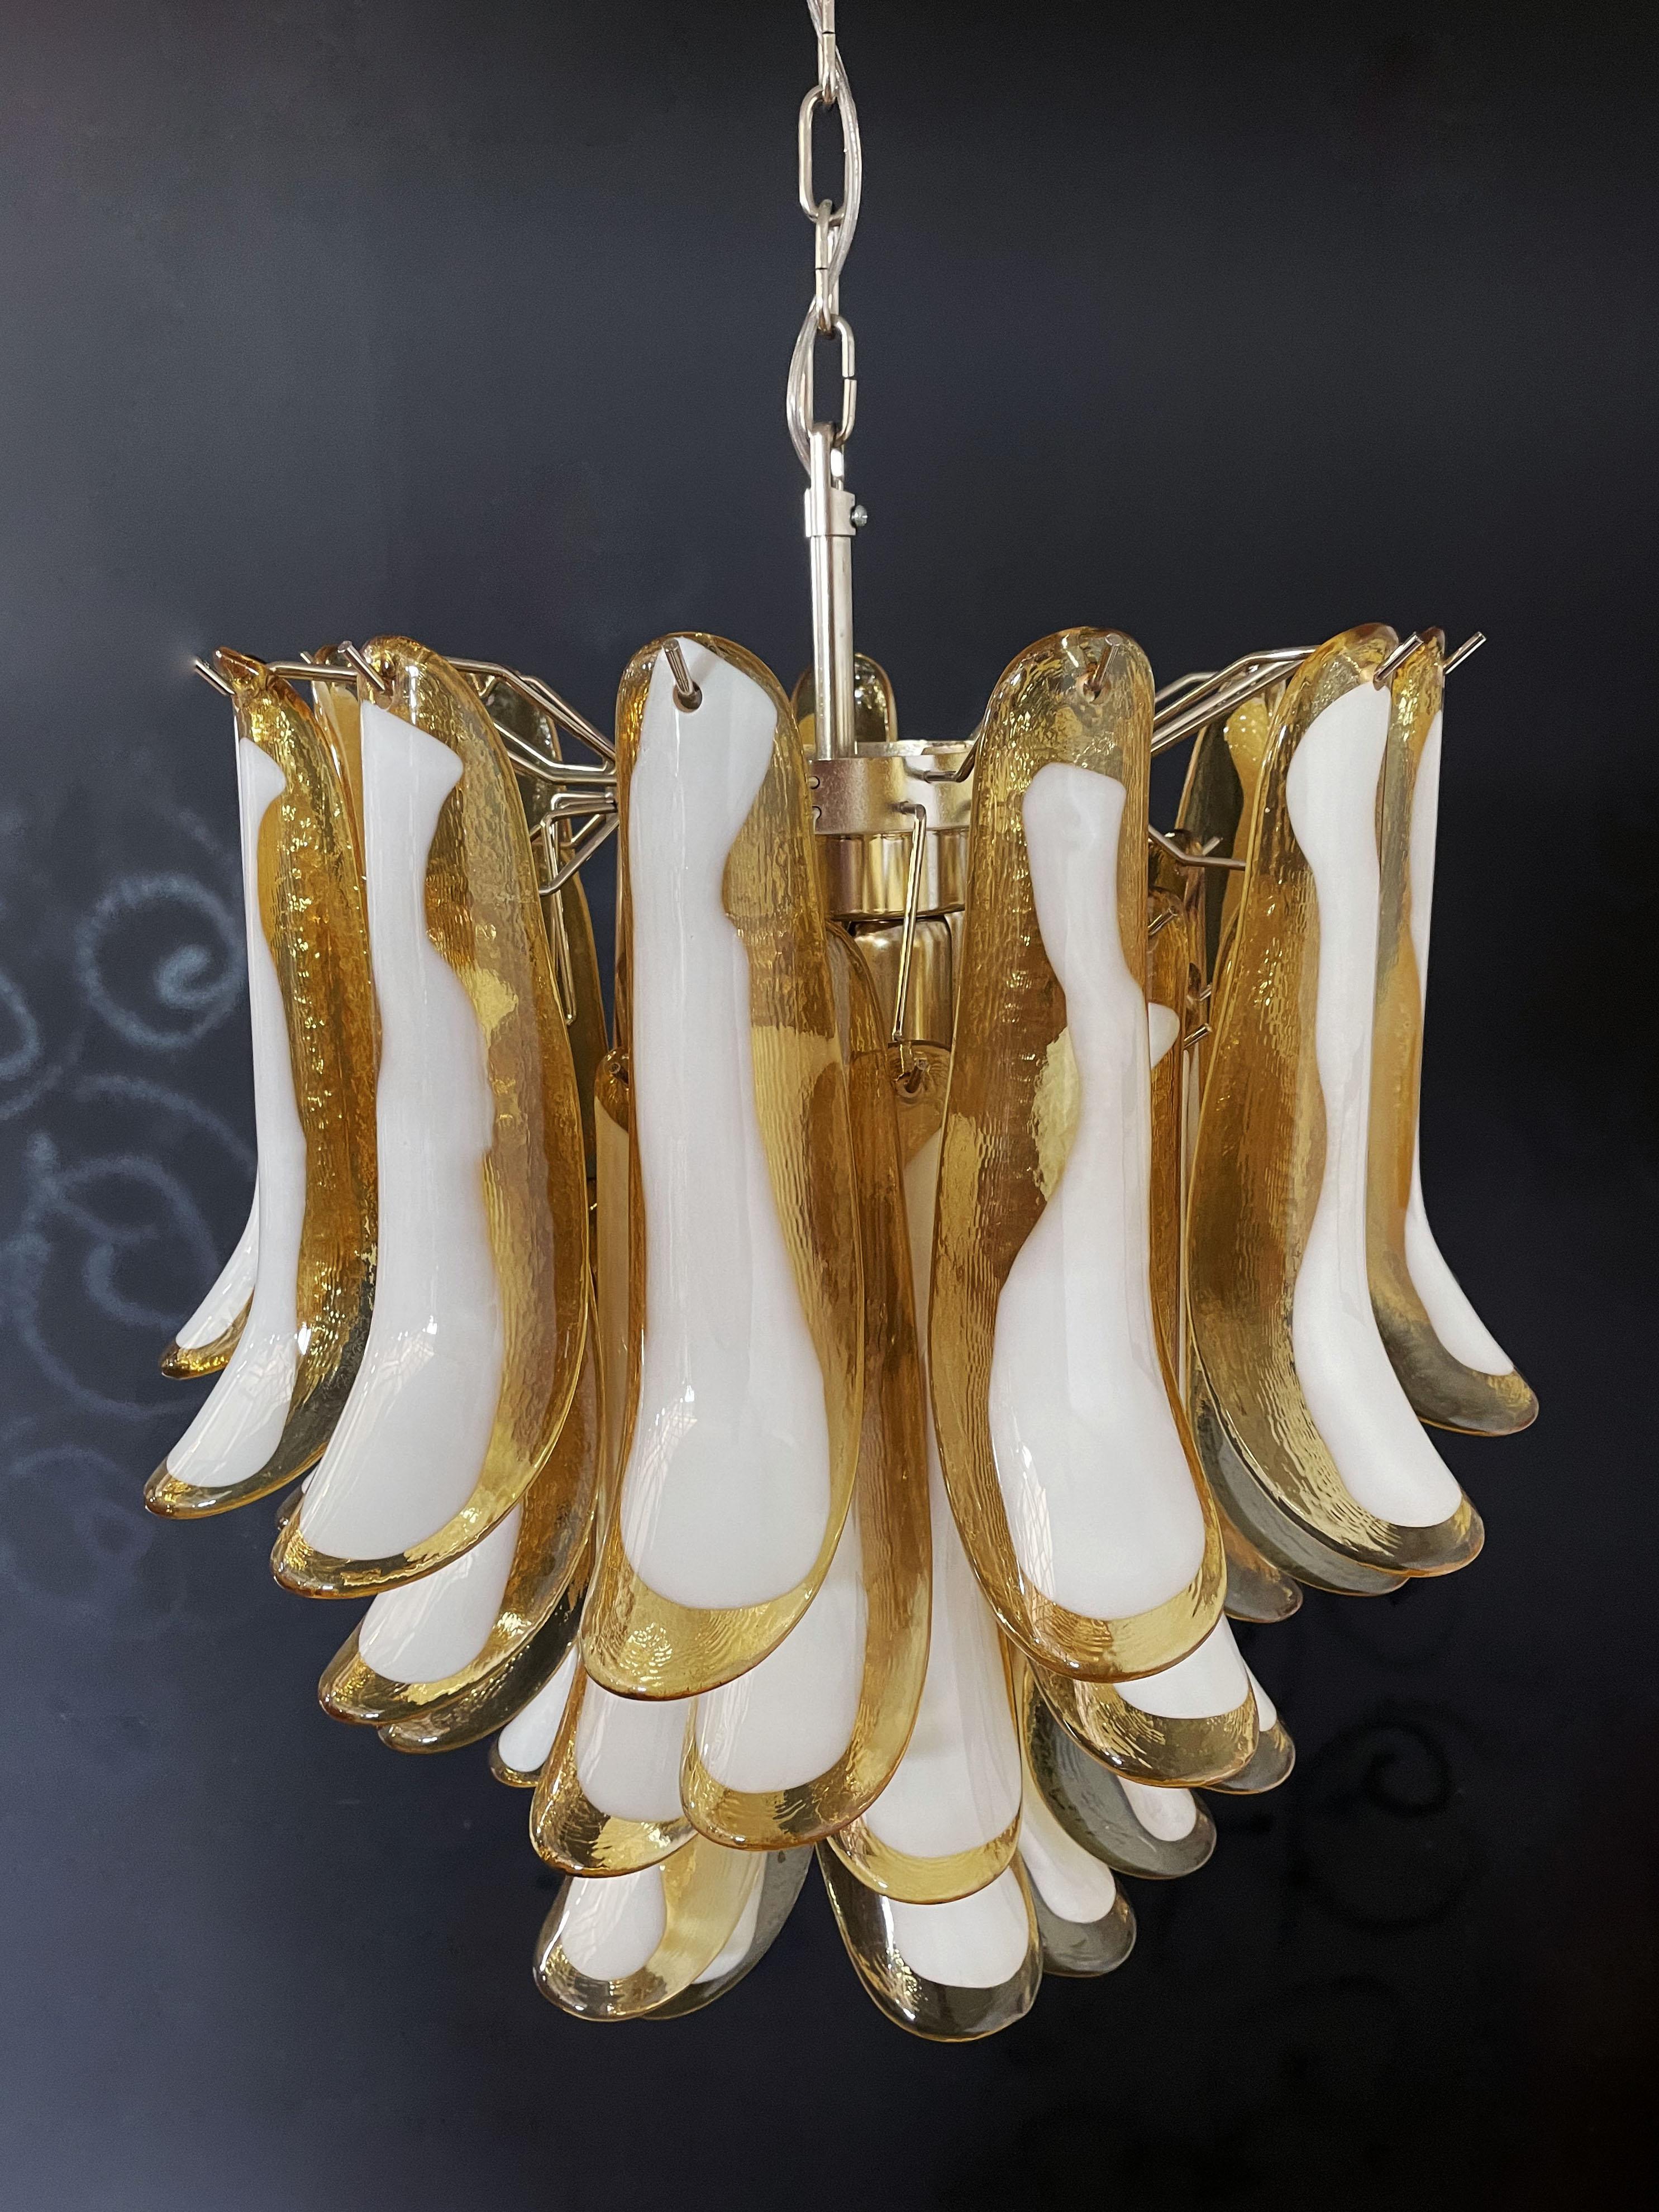 Kronleuchter aus italienischem Murano-Glas. Fantastischer Kronleuchter mit karamellfarbenen und weißen 